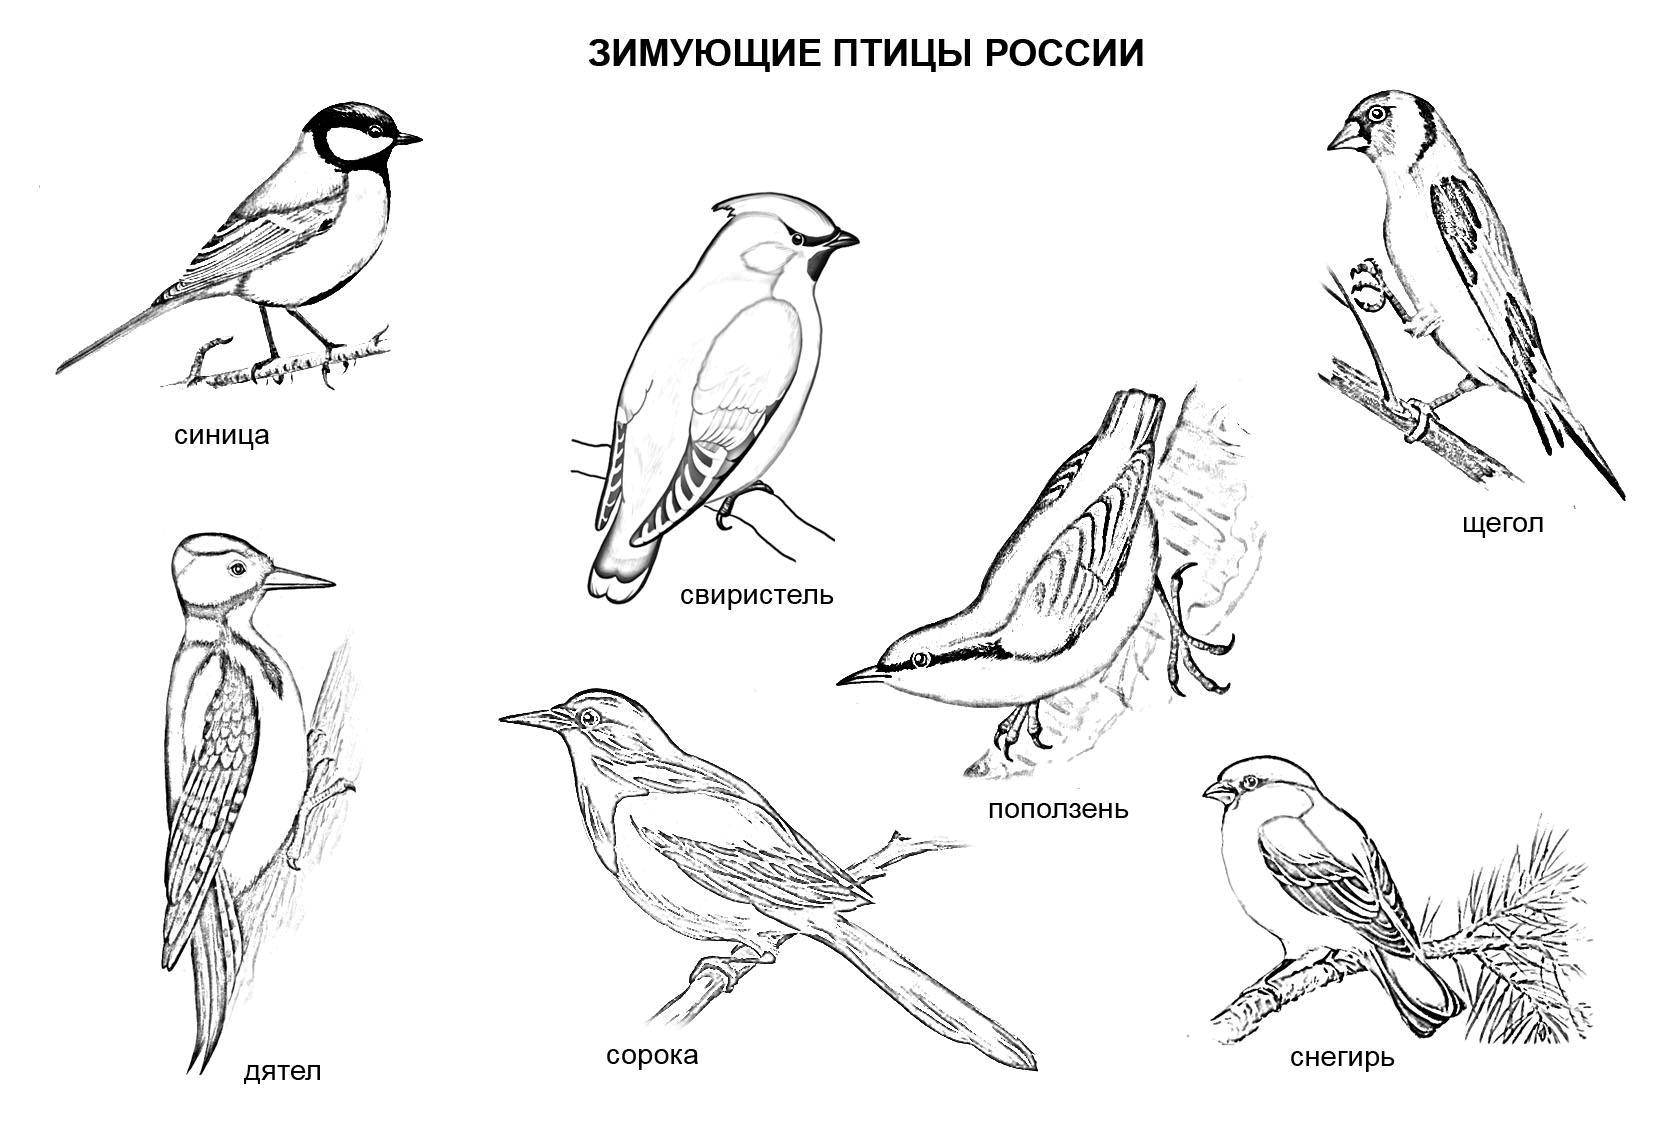 Название: Раскраска Зимующие птицы россии. Категория: россия. Теги: Россия, птицы.